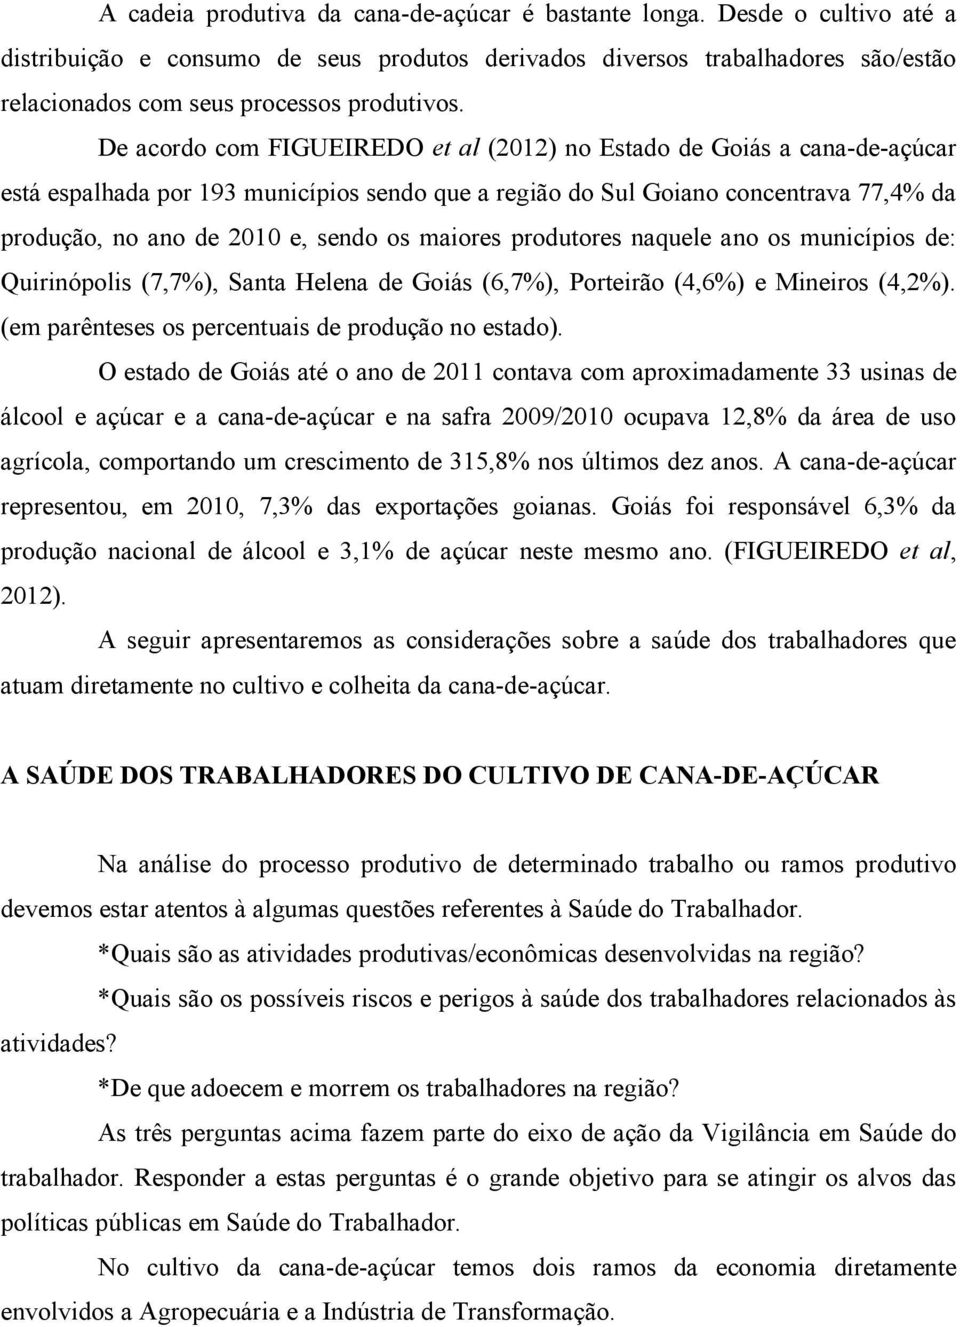 De acordo com FIGUEIREDO et al (2012) no Estado de Goiás a cana-de-açúcar está espalhada por 193 municípios sendo que a região do Sul Goiano concentrava 77,4% da produção, no ano de 2010 e, sendo os